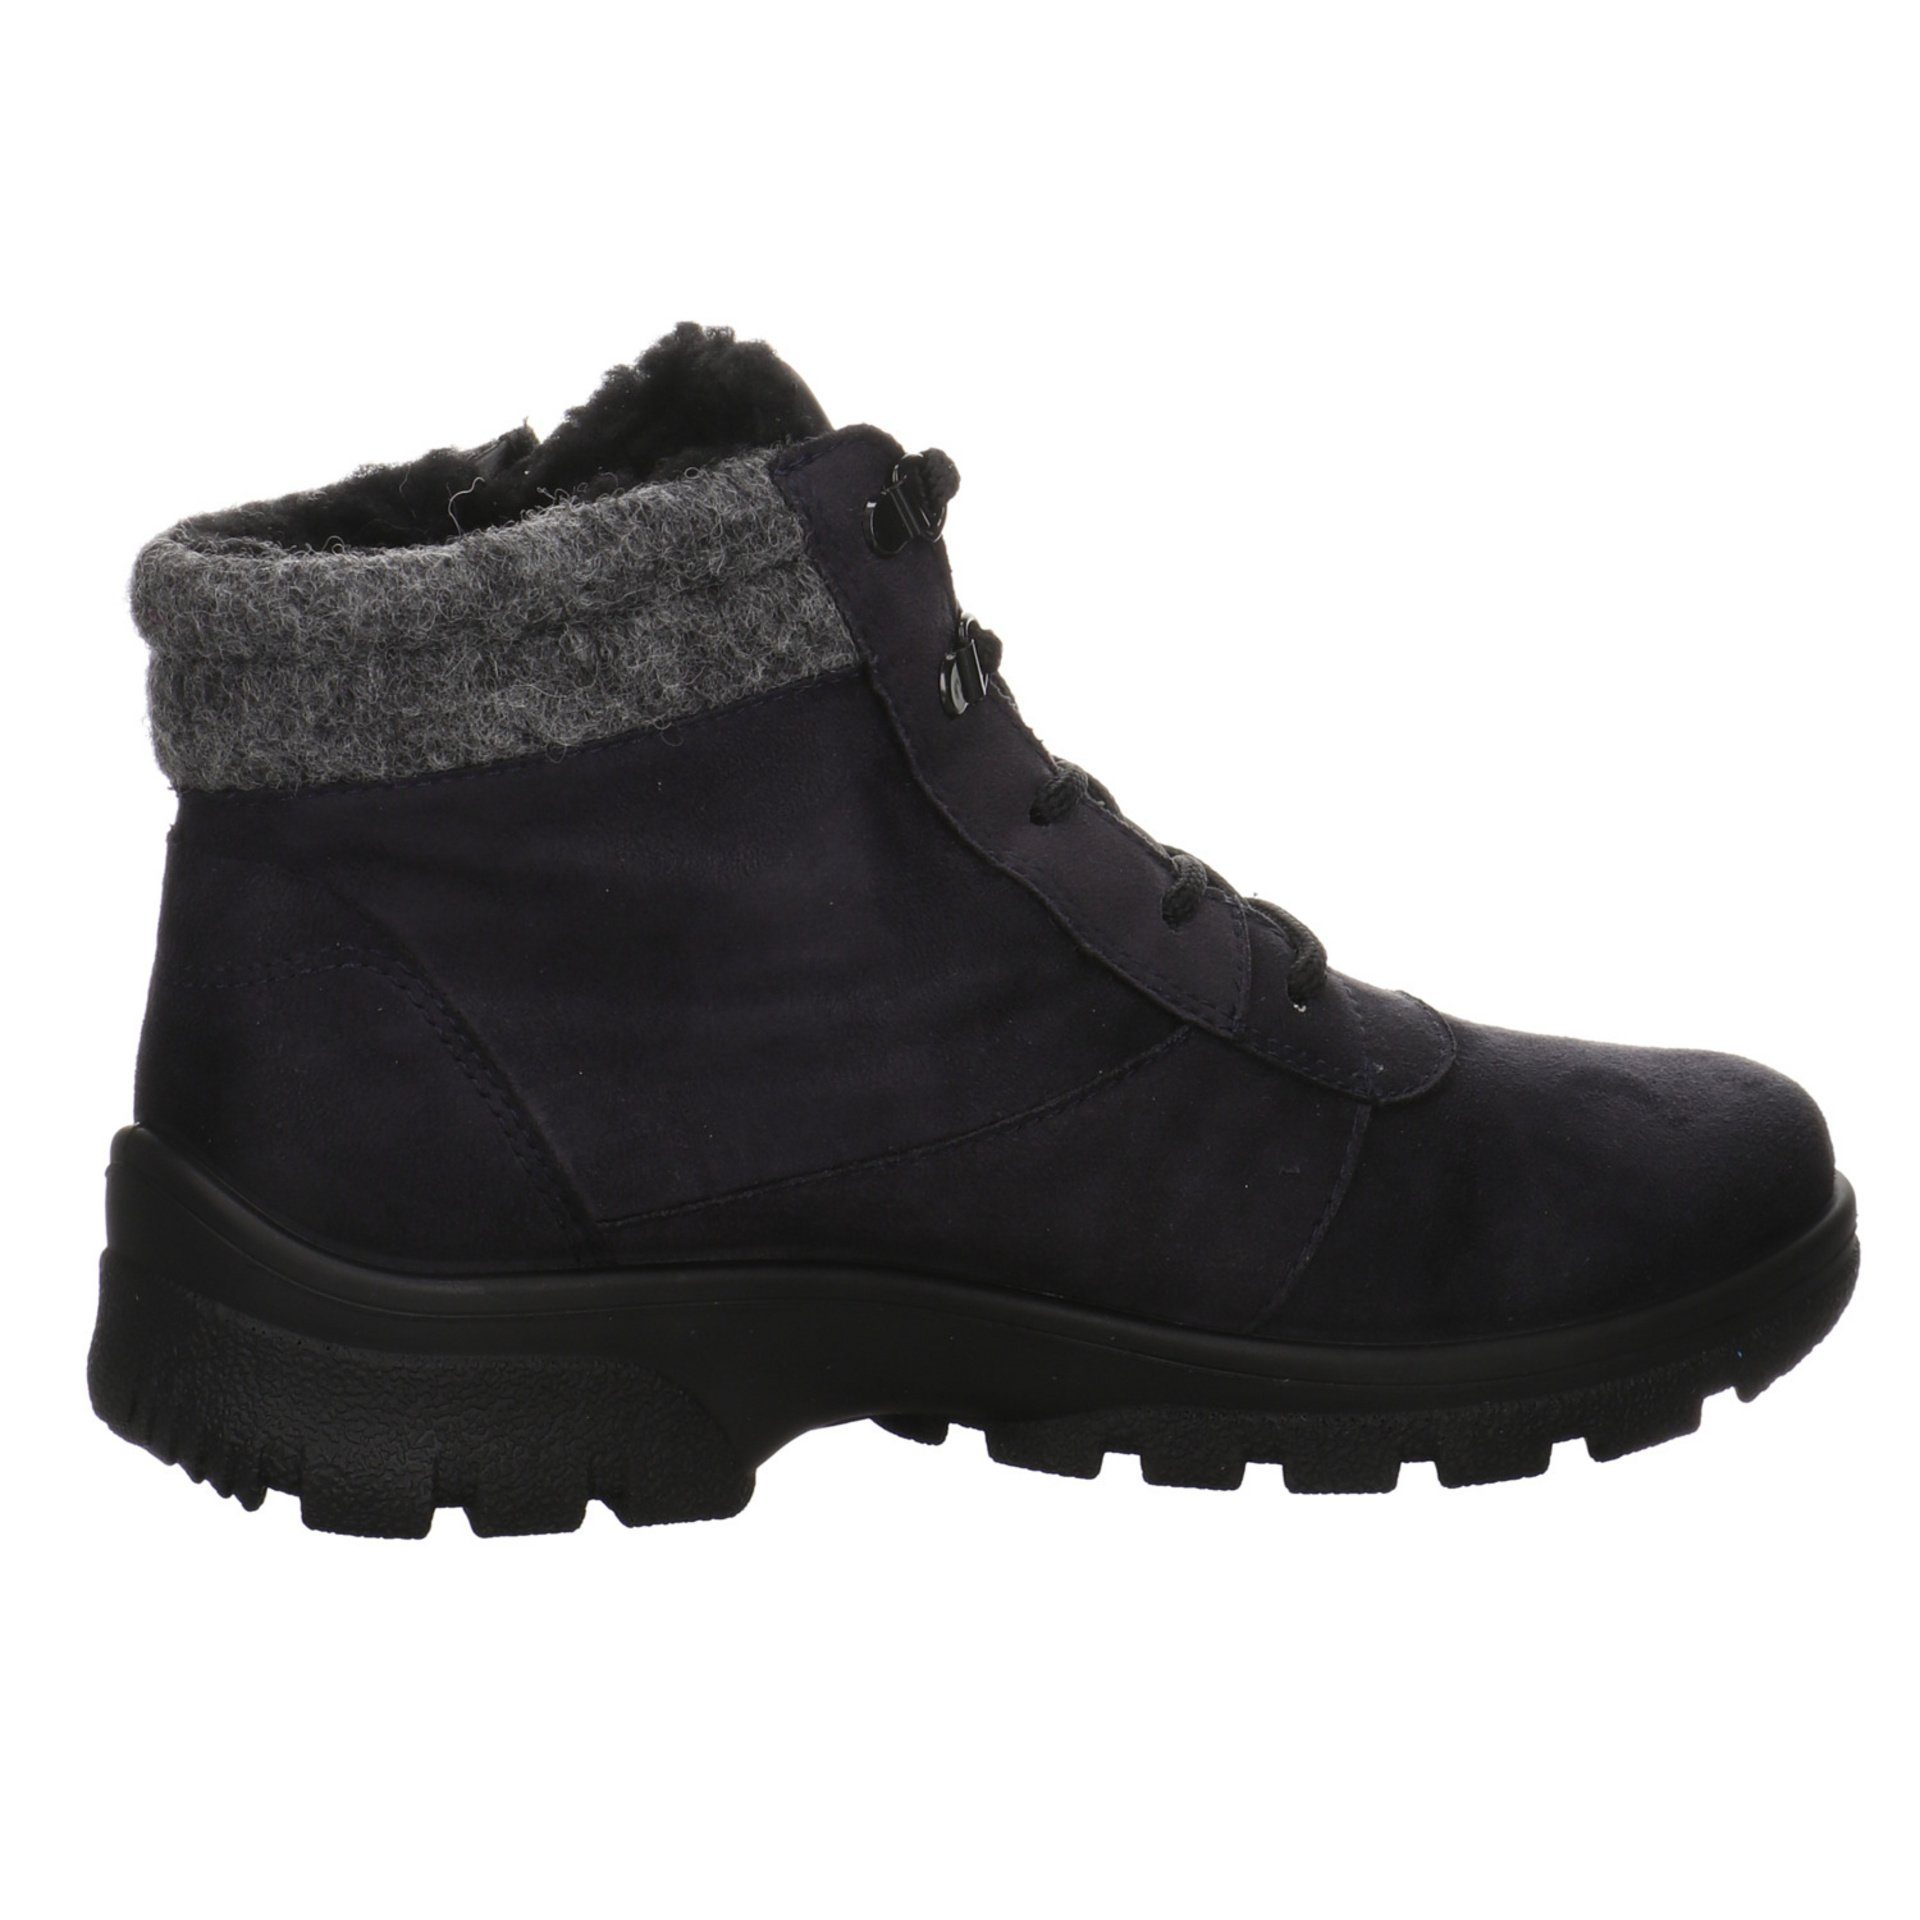 Ara Damen Snowboots Schuhe Saas-Fee blau/grau/schwarz Snowboots Boots Leder-/Textilkombination